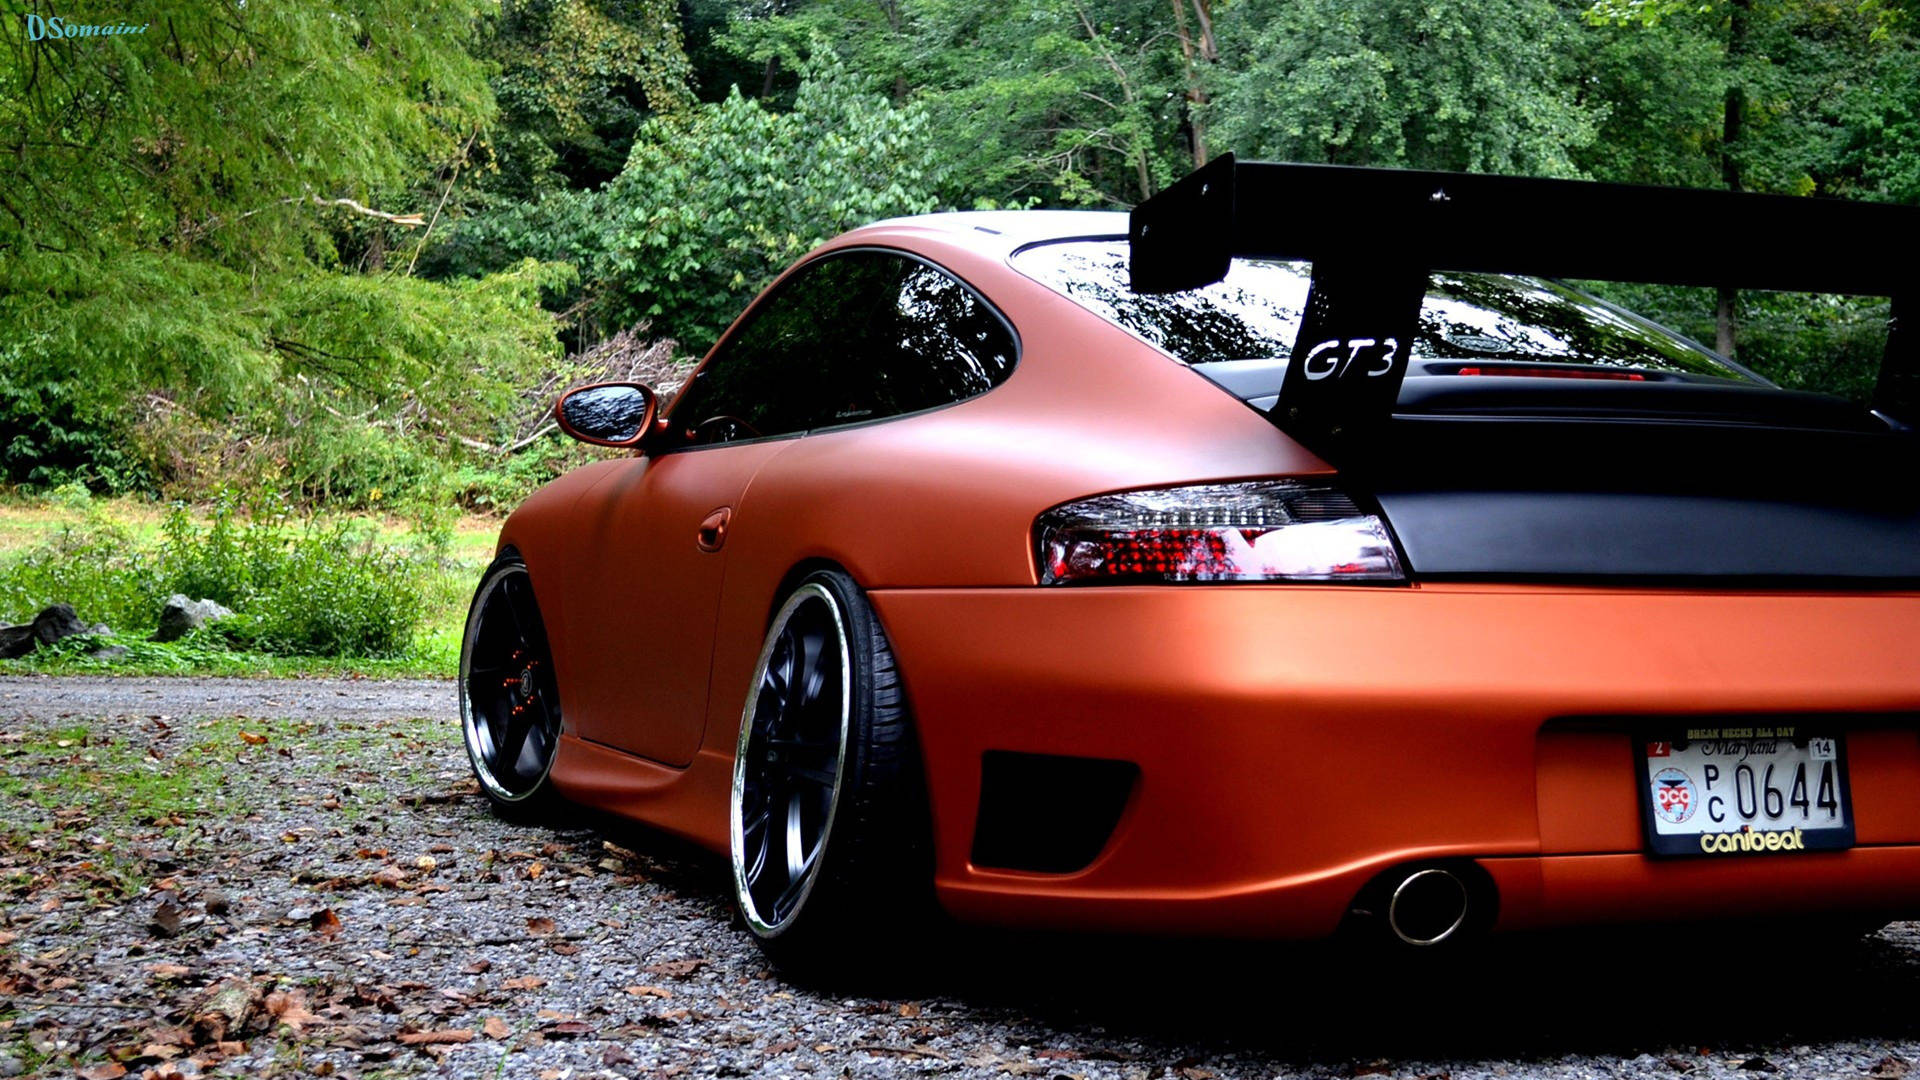 Full Hd Car Orange Porsche 911 Background